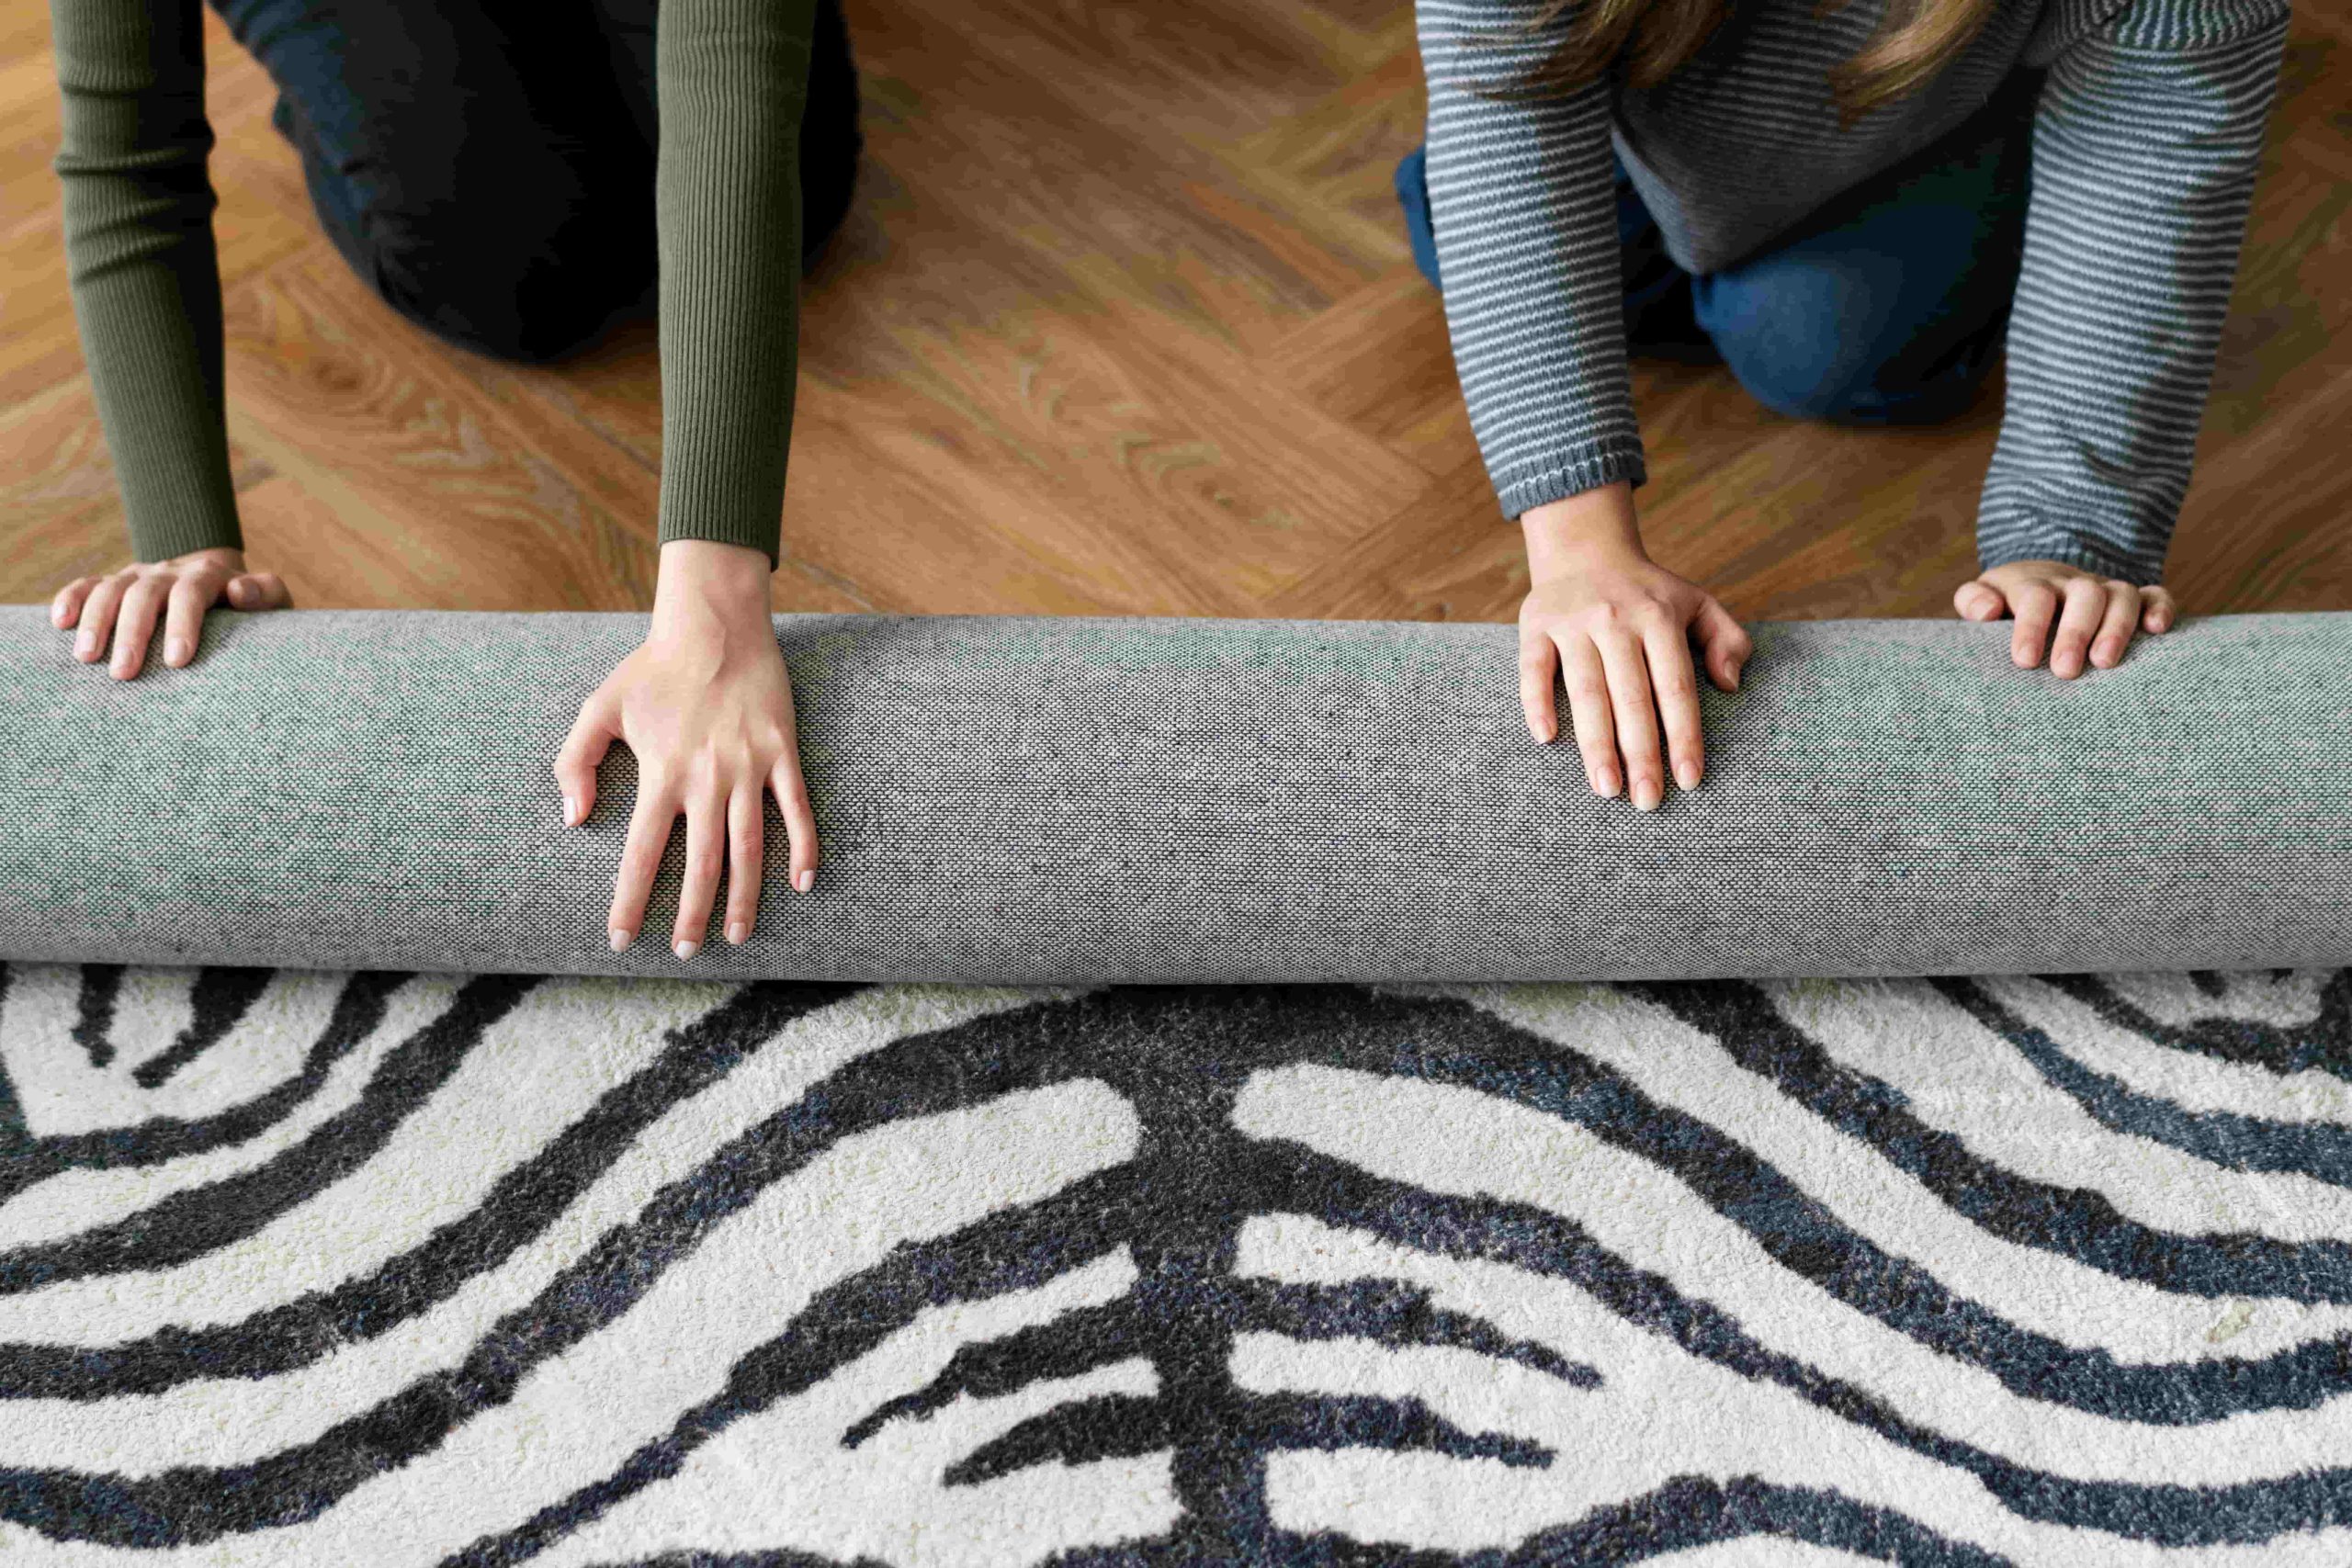 כיצד למצוא ולבחור בשטיח נכון לסלון שלך: טיפים לקנייה מושקעת –